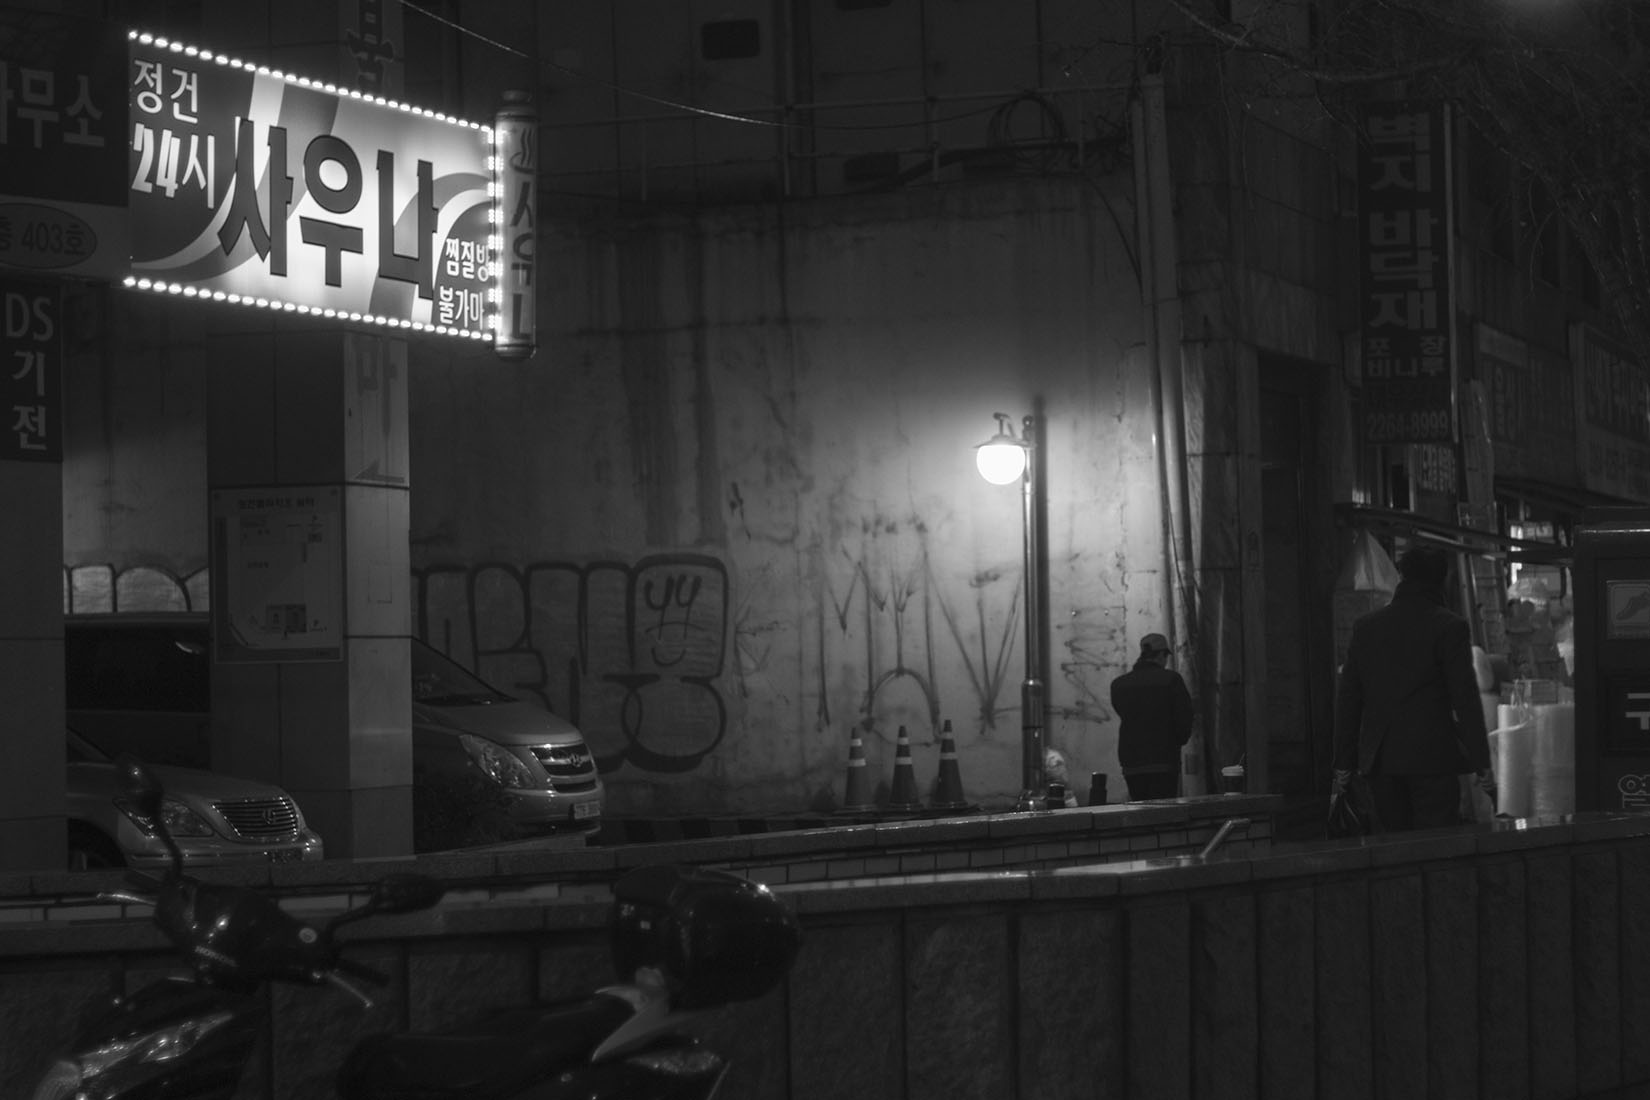 Corée du sud, rue, graffiti, homme marchant, enseigne lumineuse, contraste, noir blanc